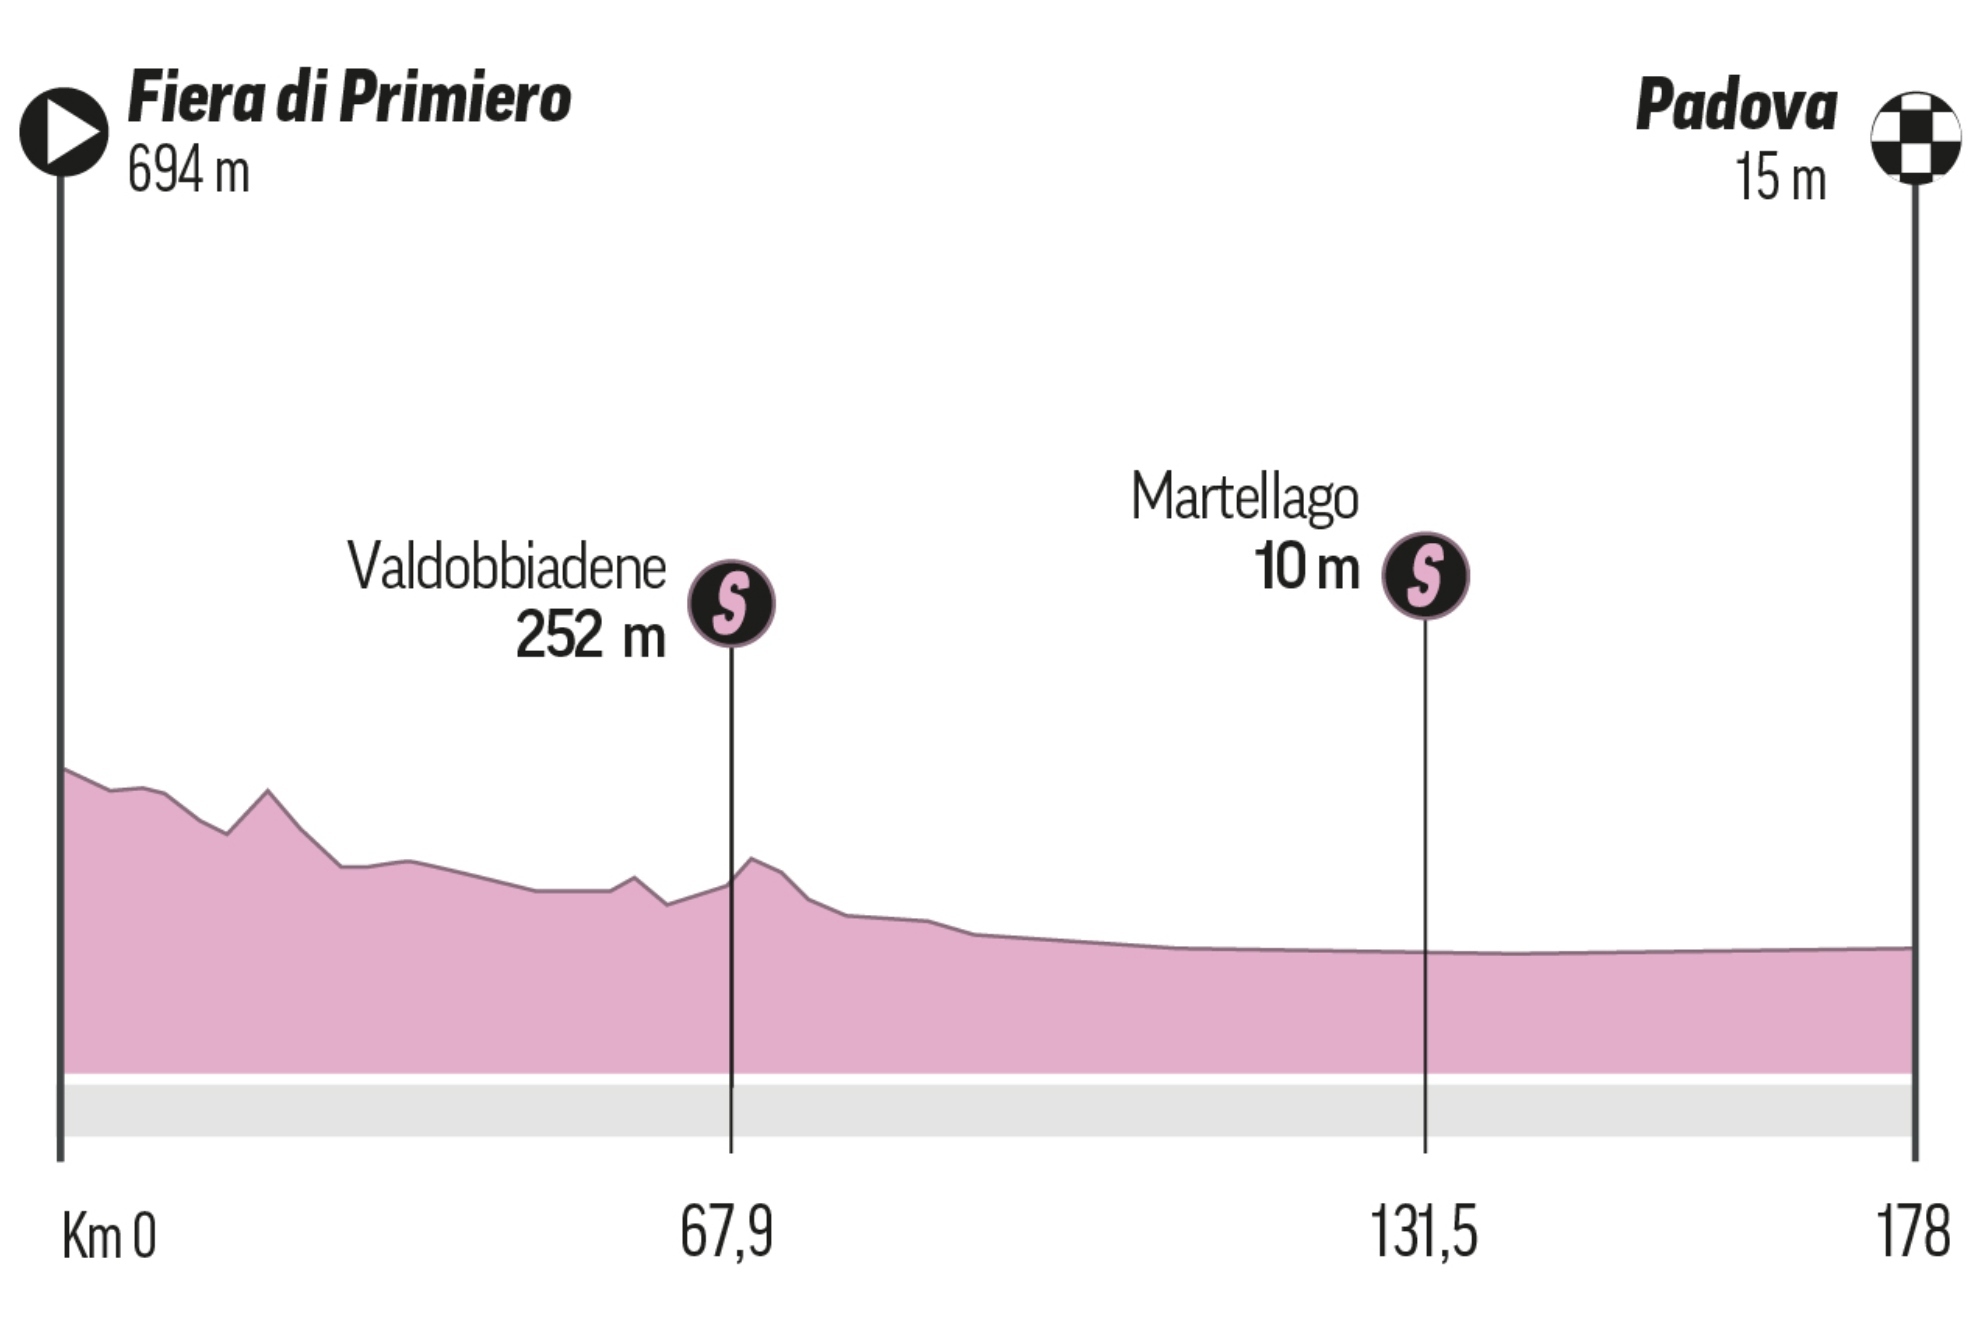 Giro de Italia, hoy en directo | Etapa 18: Fiera di Primiero - Padova en vivo